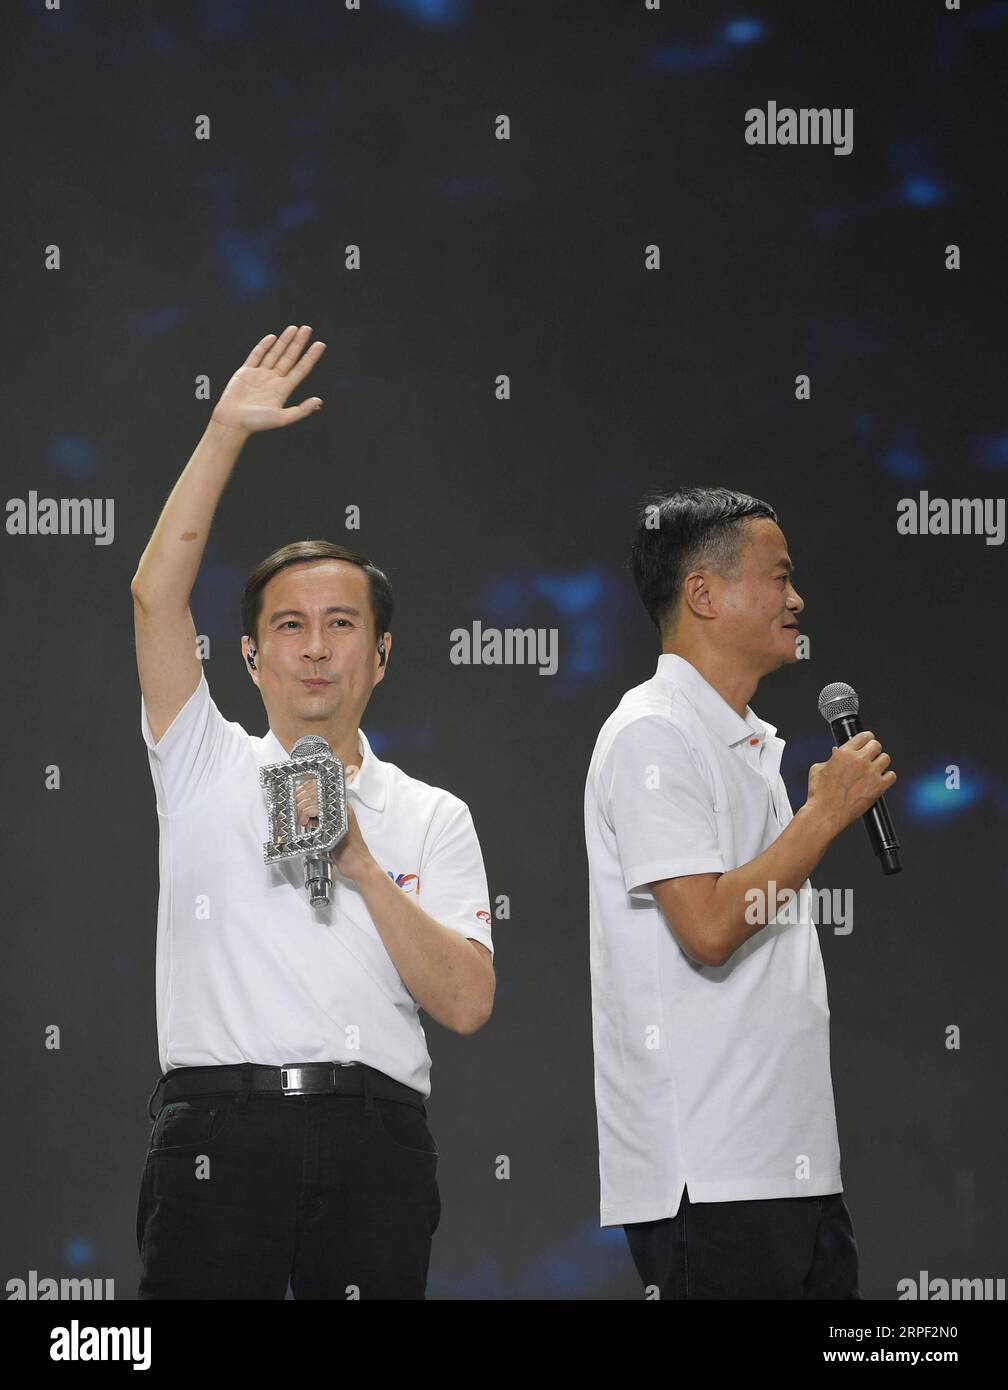 (190911) -- HANGZHOU, 11. September 2019 -- Jack Ma (R) und Alibabas CEO Daniel Zhang posieren anlässlich des 20-jährigen Bestehens der Alibaba Group in Hangzhou, der Hauptstadt der ostchinesischen Provinz Zhejiang, am 10. September 2019. Jack Ma trat offiziell als Group Chairman von Alibaba Tuesday zurück und übergab die Position an den CEO Daniel Zhang. Es ist ein besonderer Tag sowohl für den chinesischen Milliardär als auch für den E-Commerce-Giganten, den er mitbegründet hat. MA, eine ehemalige Englischlehrerin, wird am Dienstag 55, was auch den 20. Jahrestag der Alibaba Group und den Tag der Lehrer markierte. MA hat CE übergeben Stockfoto